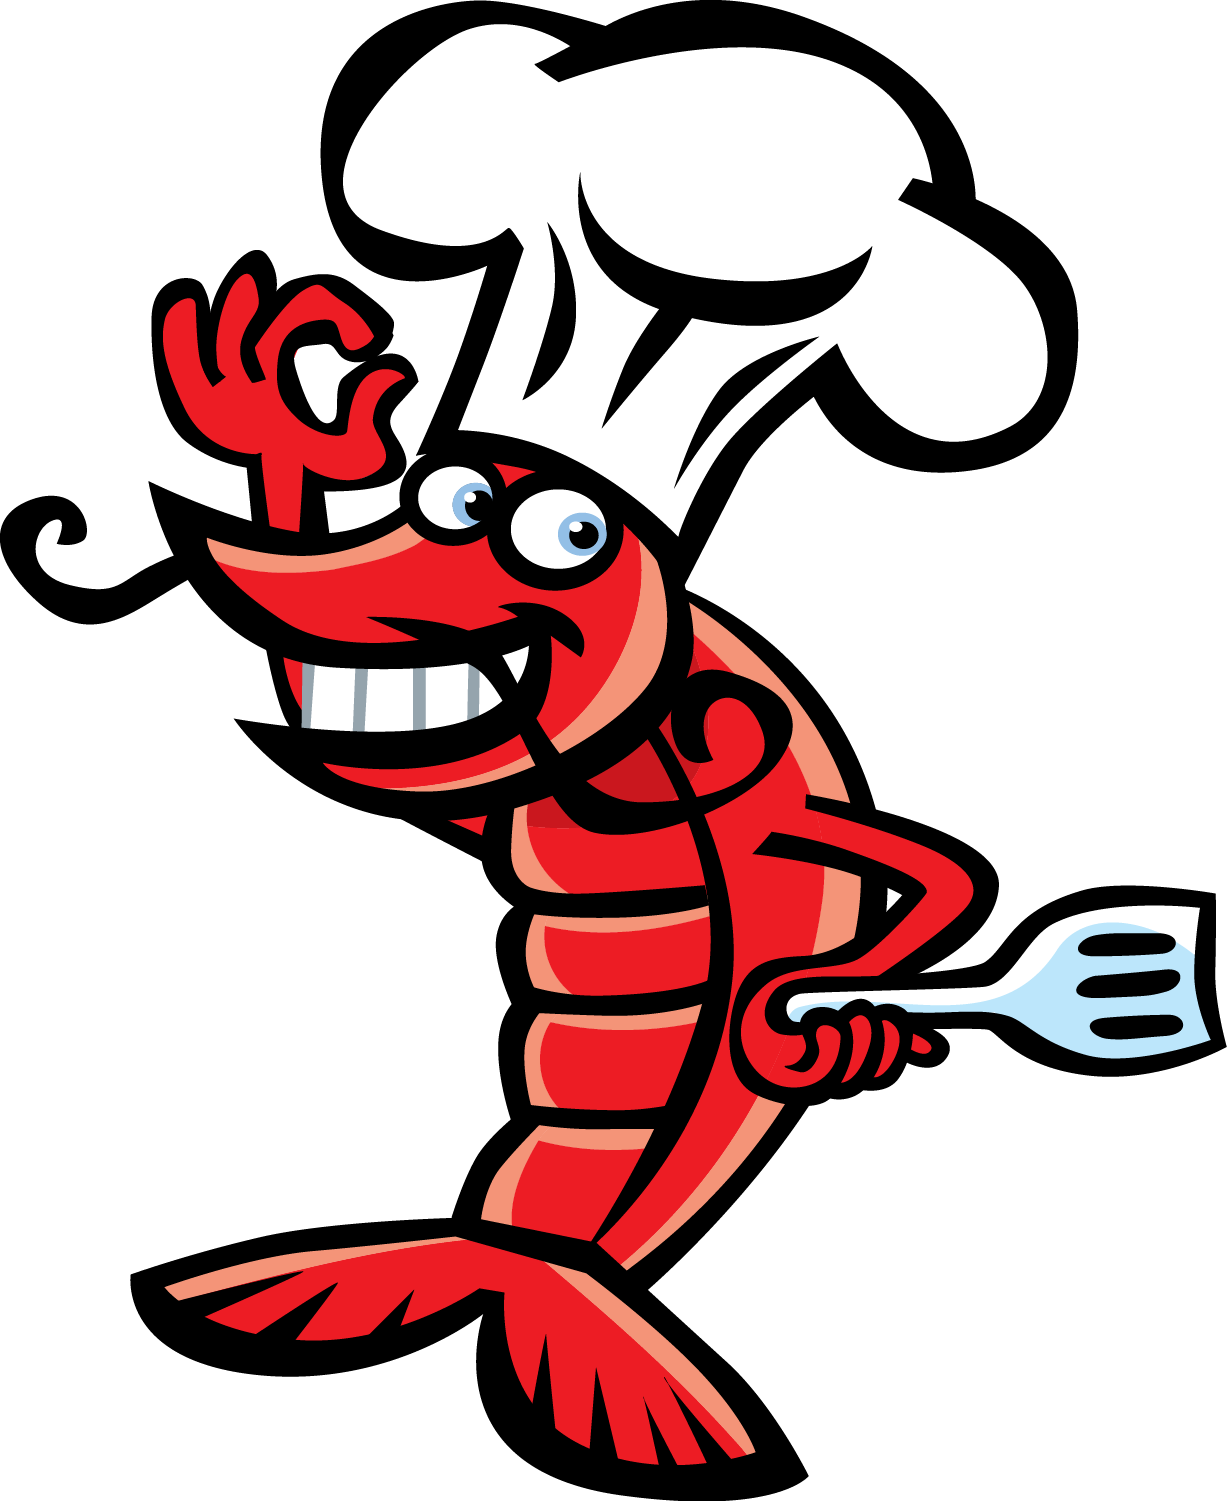 Shrimp clip art images illustrations photos 2